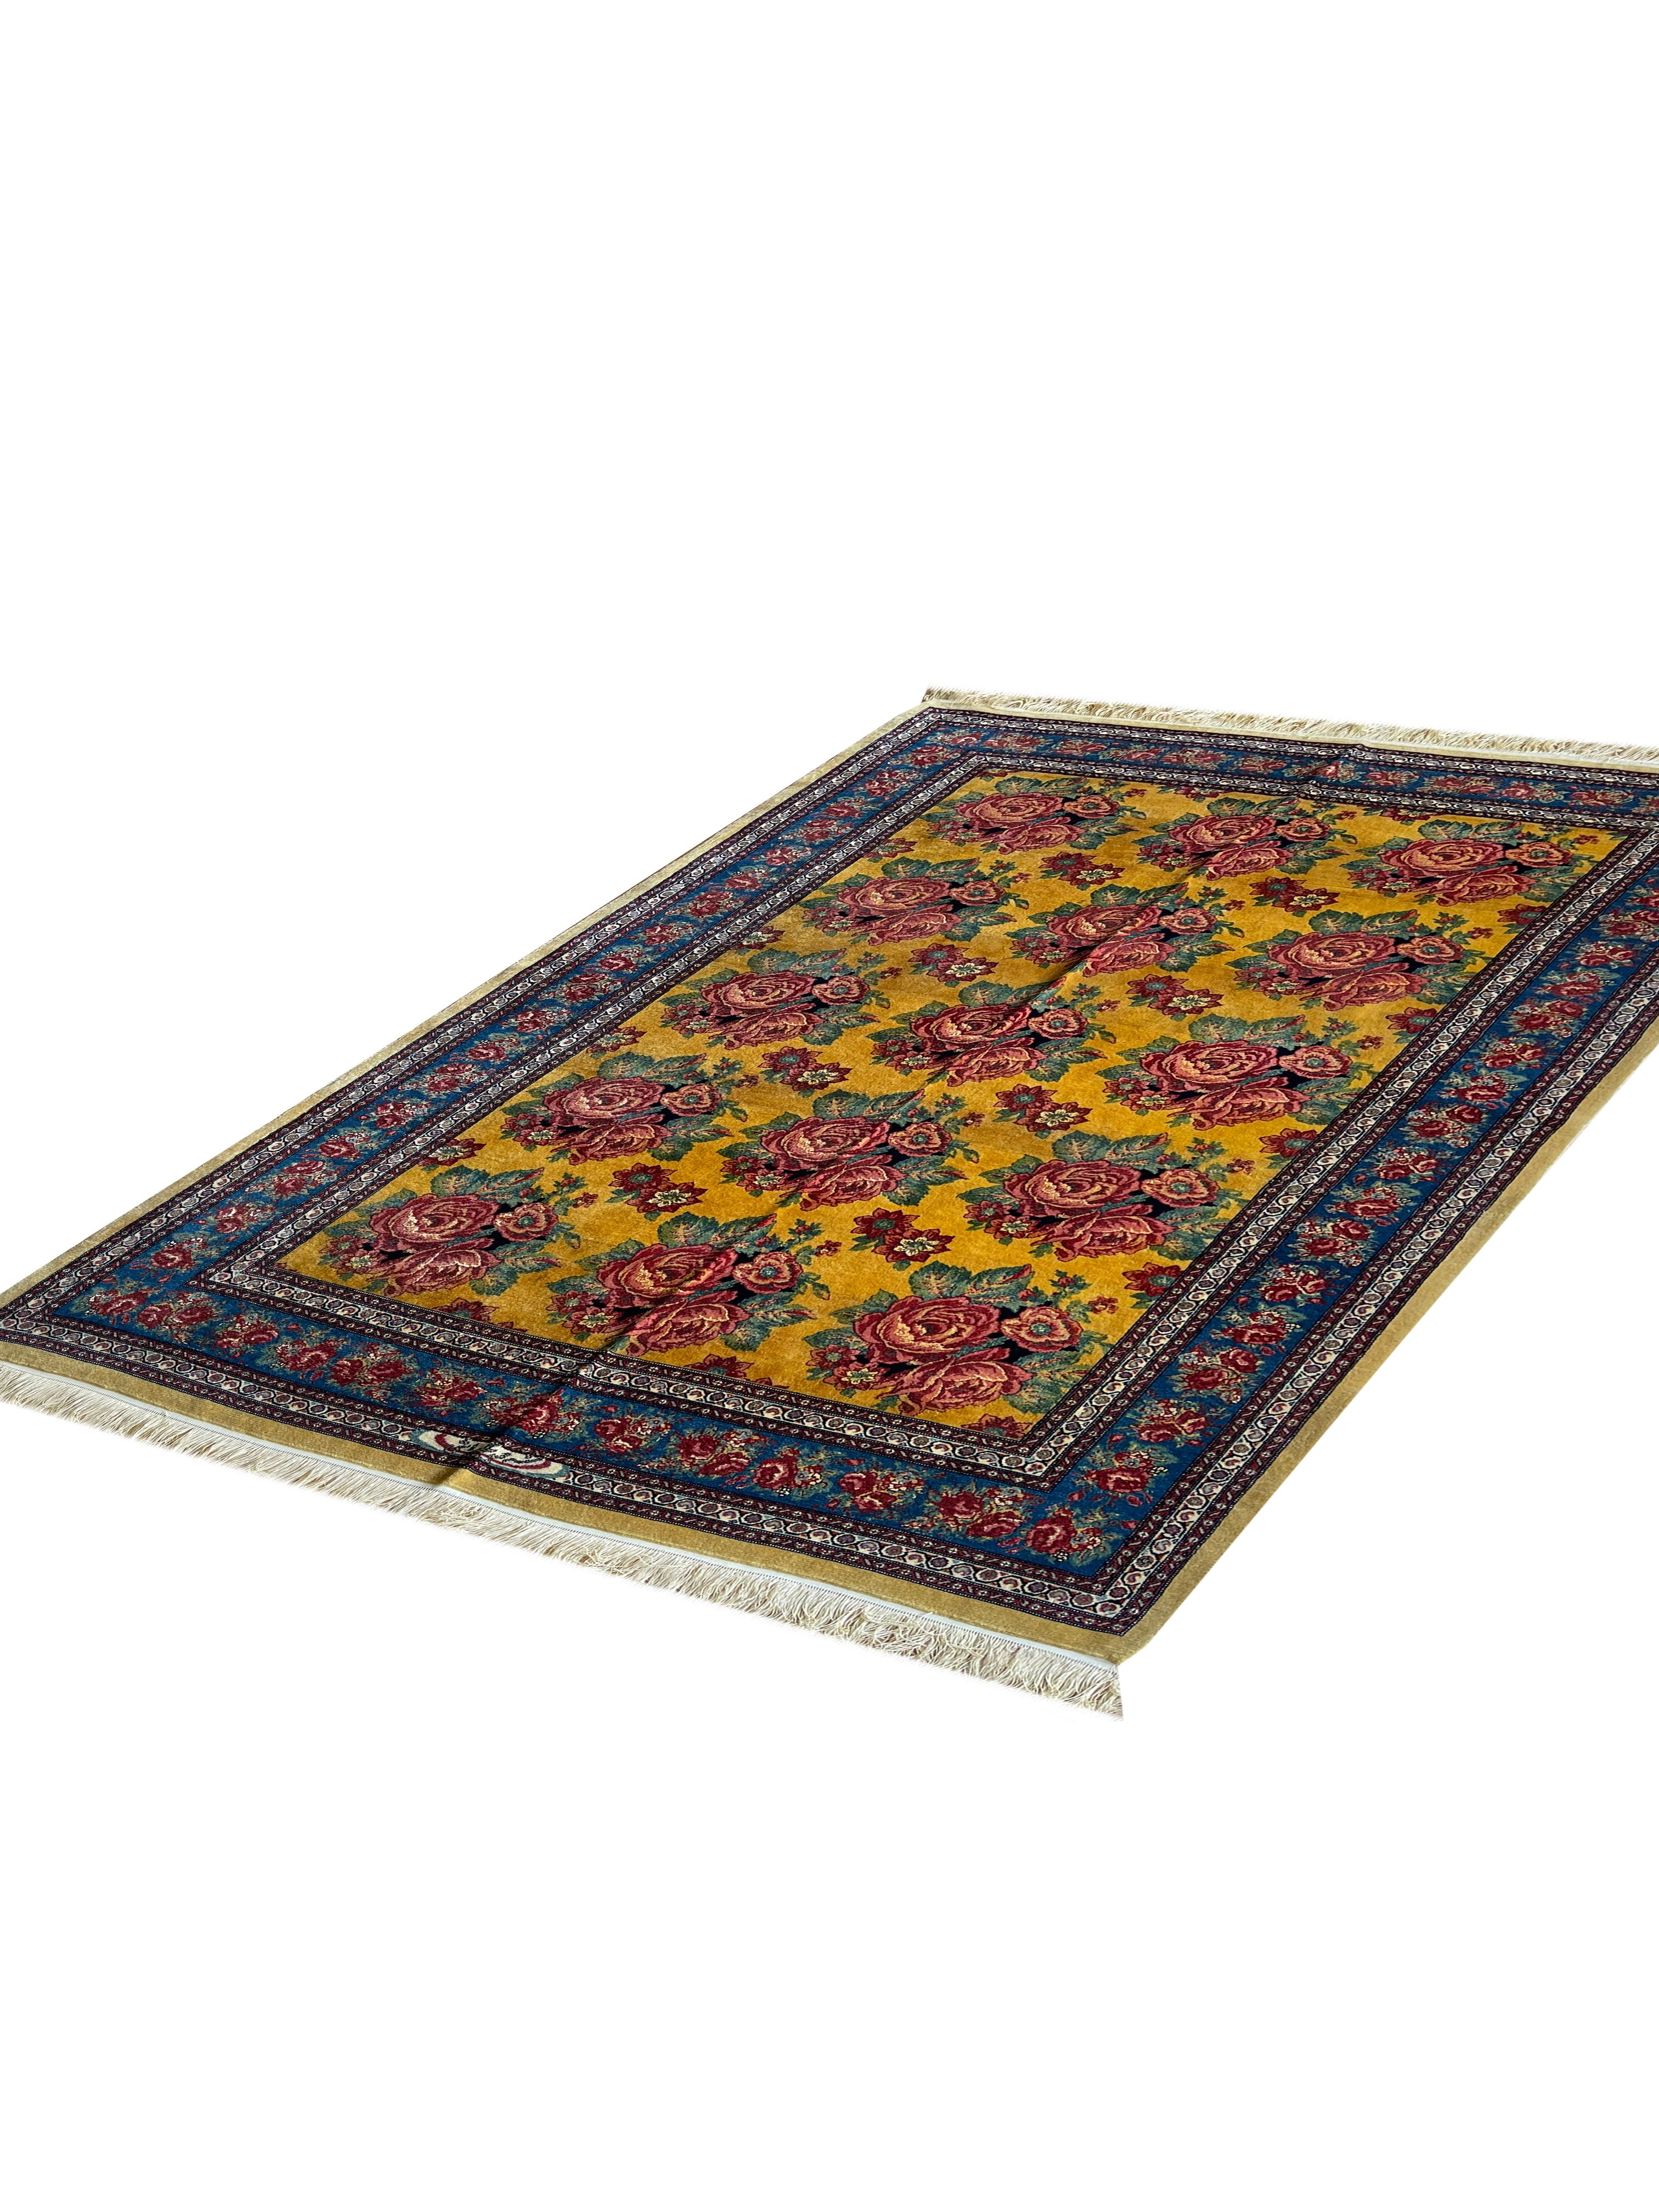 antique carpets for sale